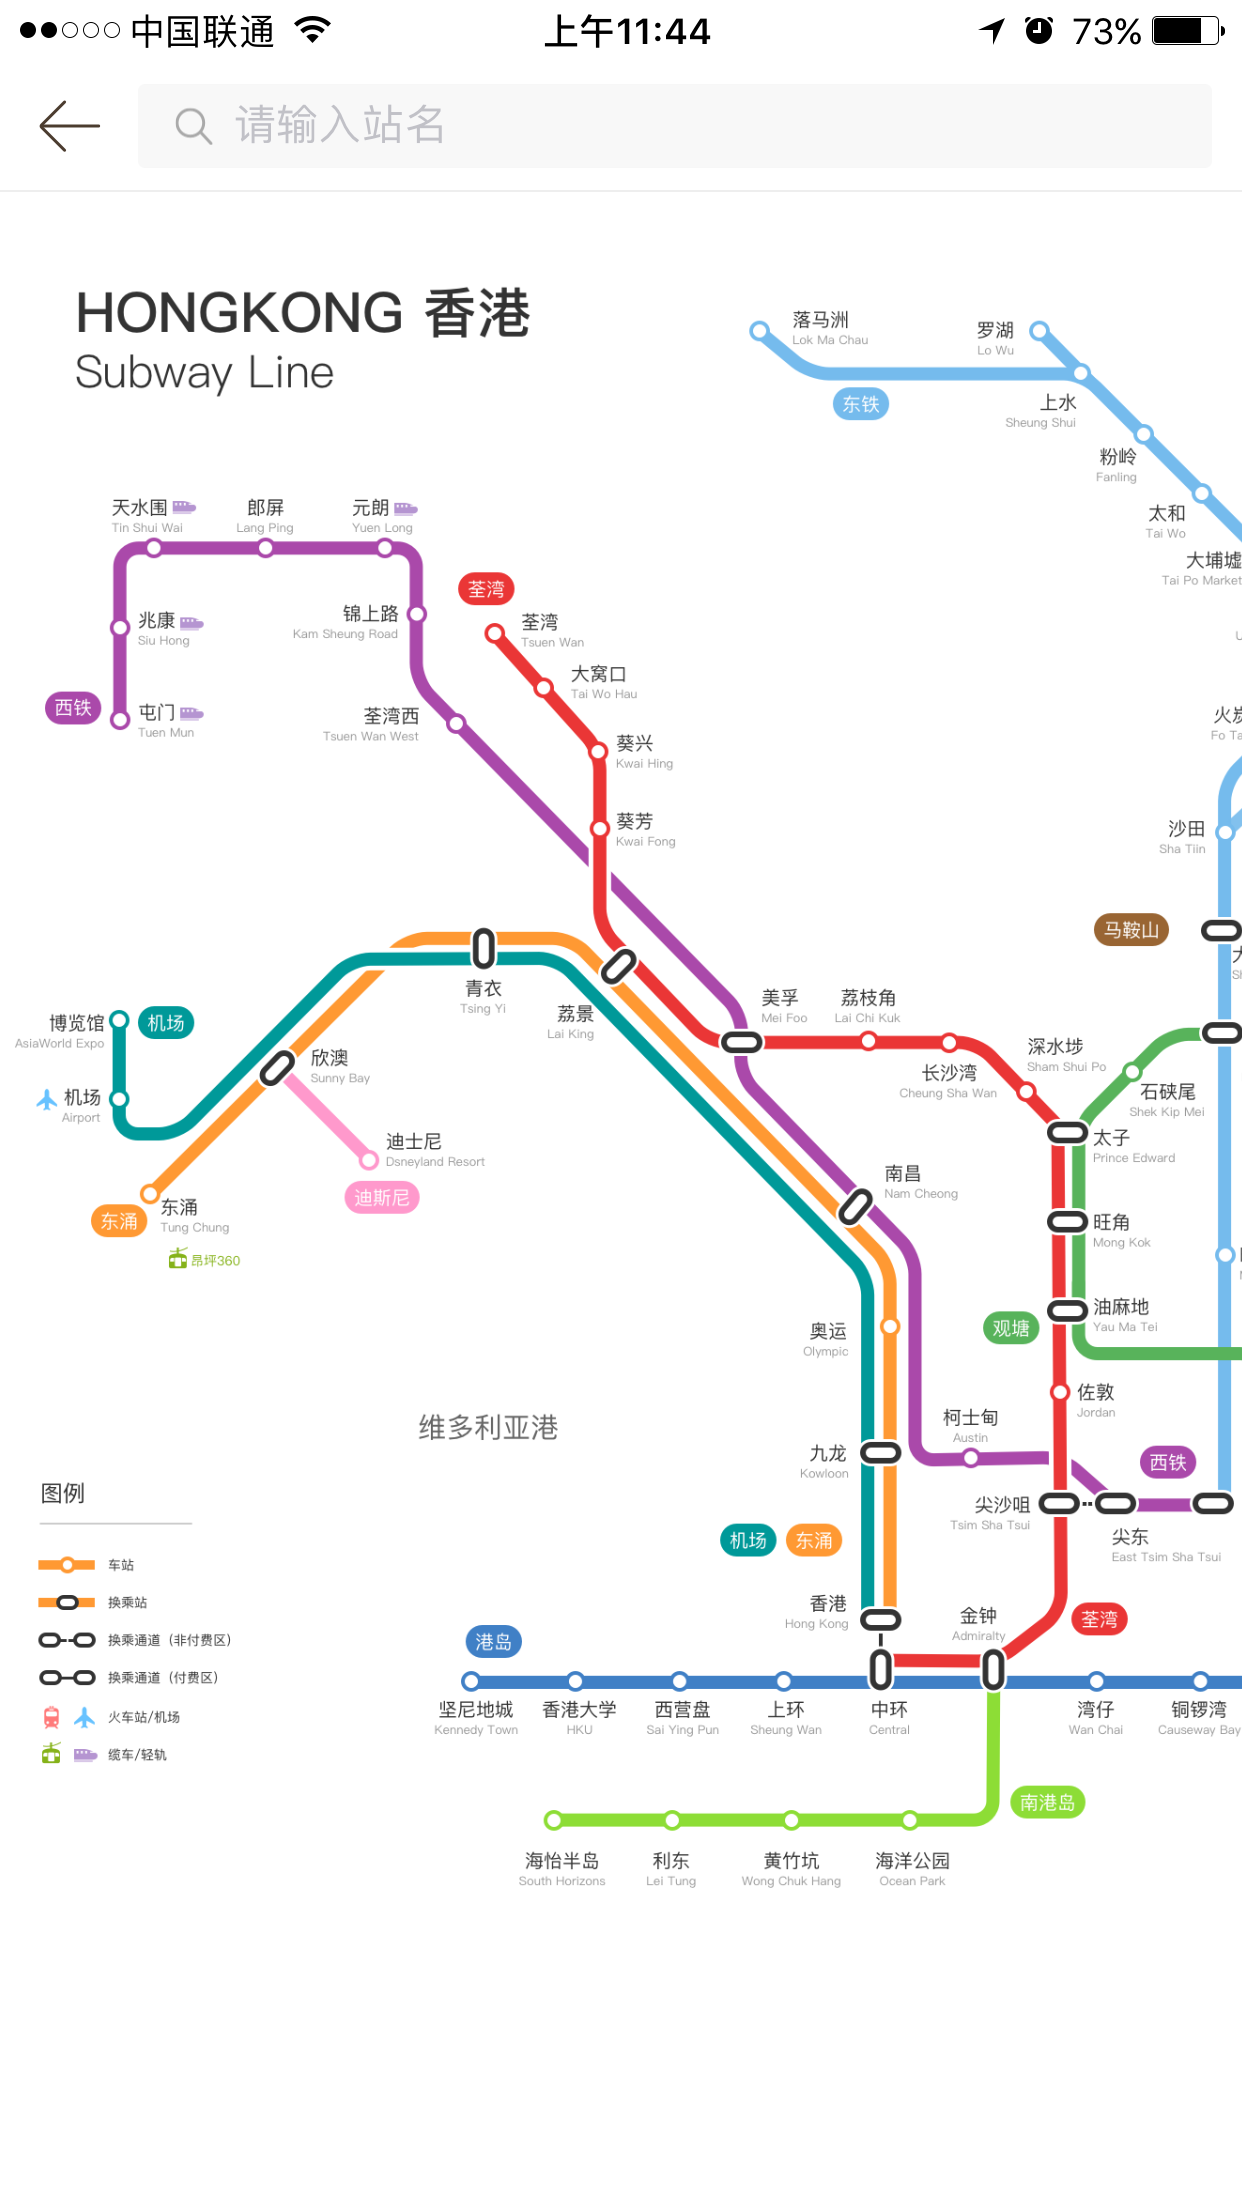 请问从迪士尼去香港要坐什么地铁路线?香港哪里最多人